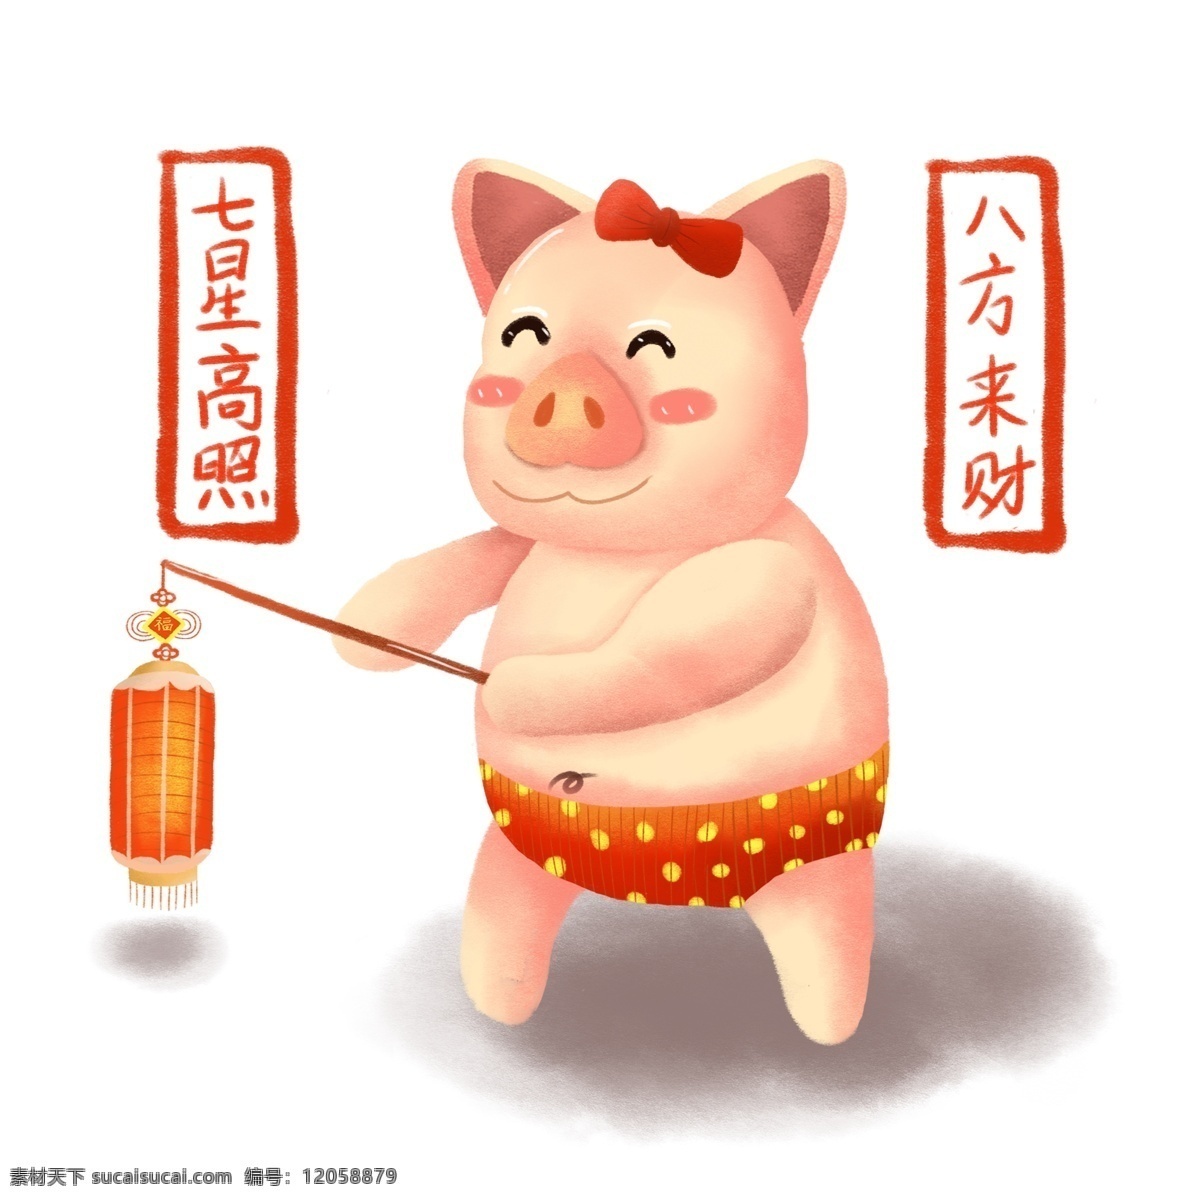 手绘 新年 可爱 灯笼 猪 商用 手绘风 喜庆 元素设计 小猪形象 七星高照 八方来袭 萌物 可商用